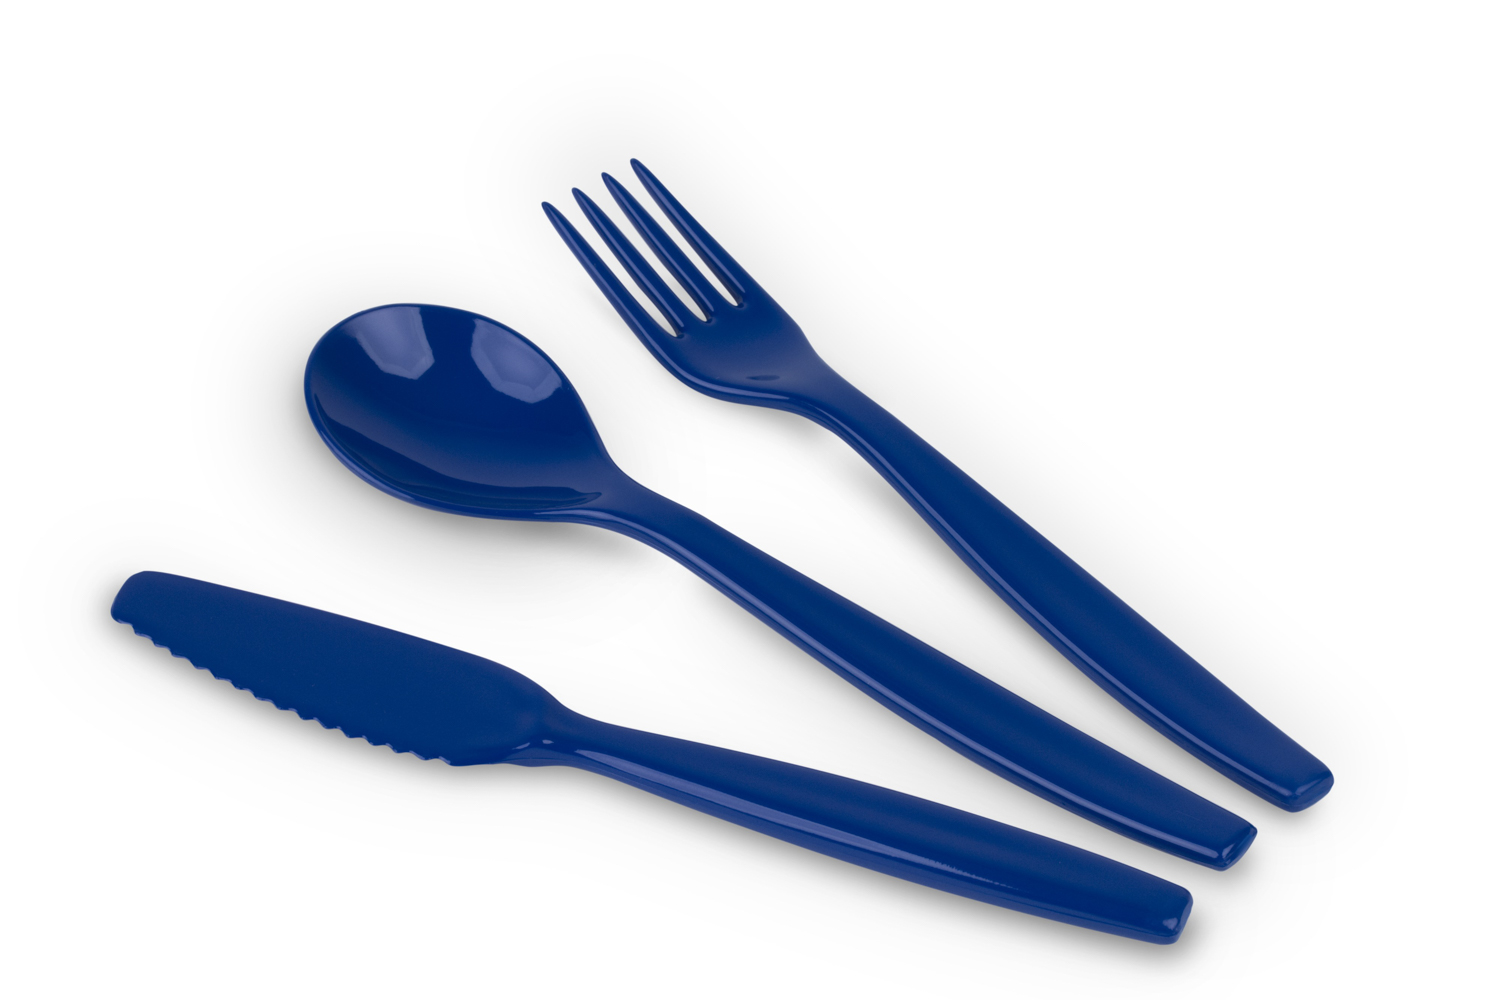 Kinderzeug Besteck-Set BRISE, blau 3-teilig: Messer, Gabel, Löffel, spülmaschinen- geeignet. Länge ca. 16,5 cm, Gewicht 31 g